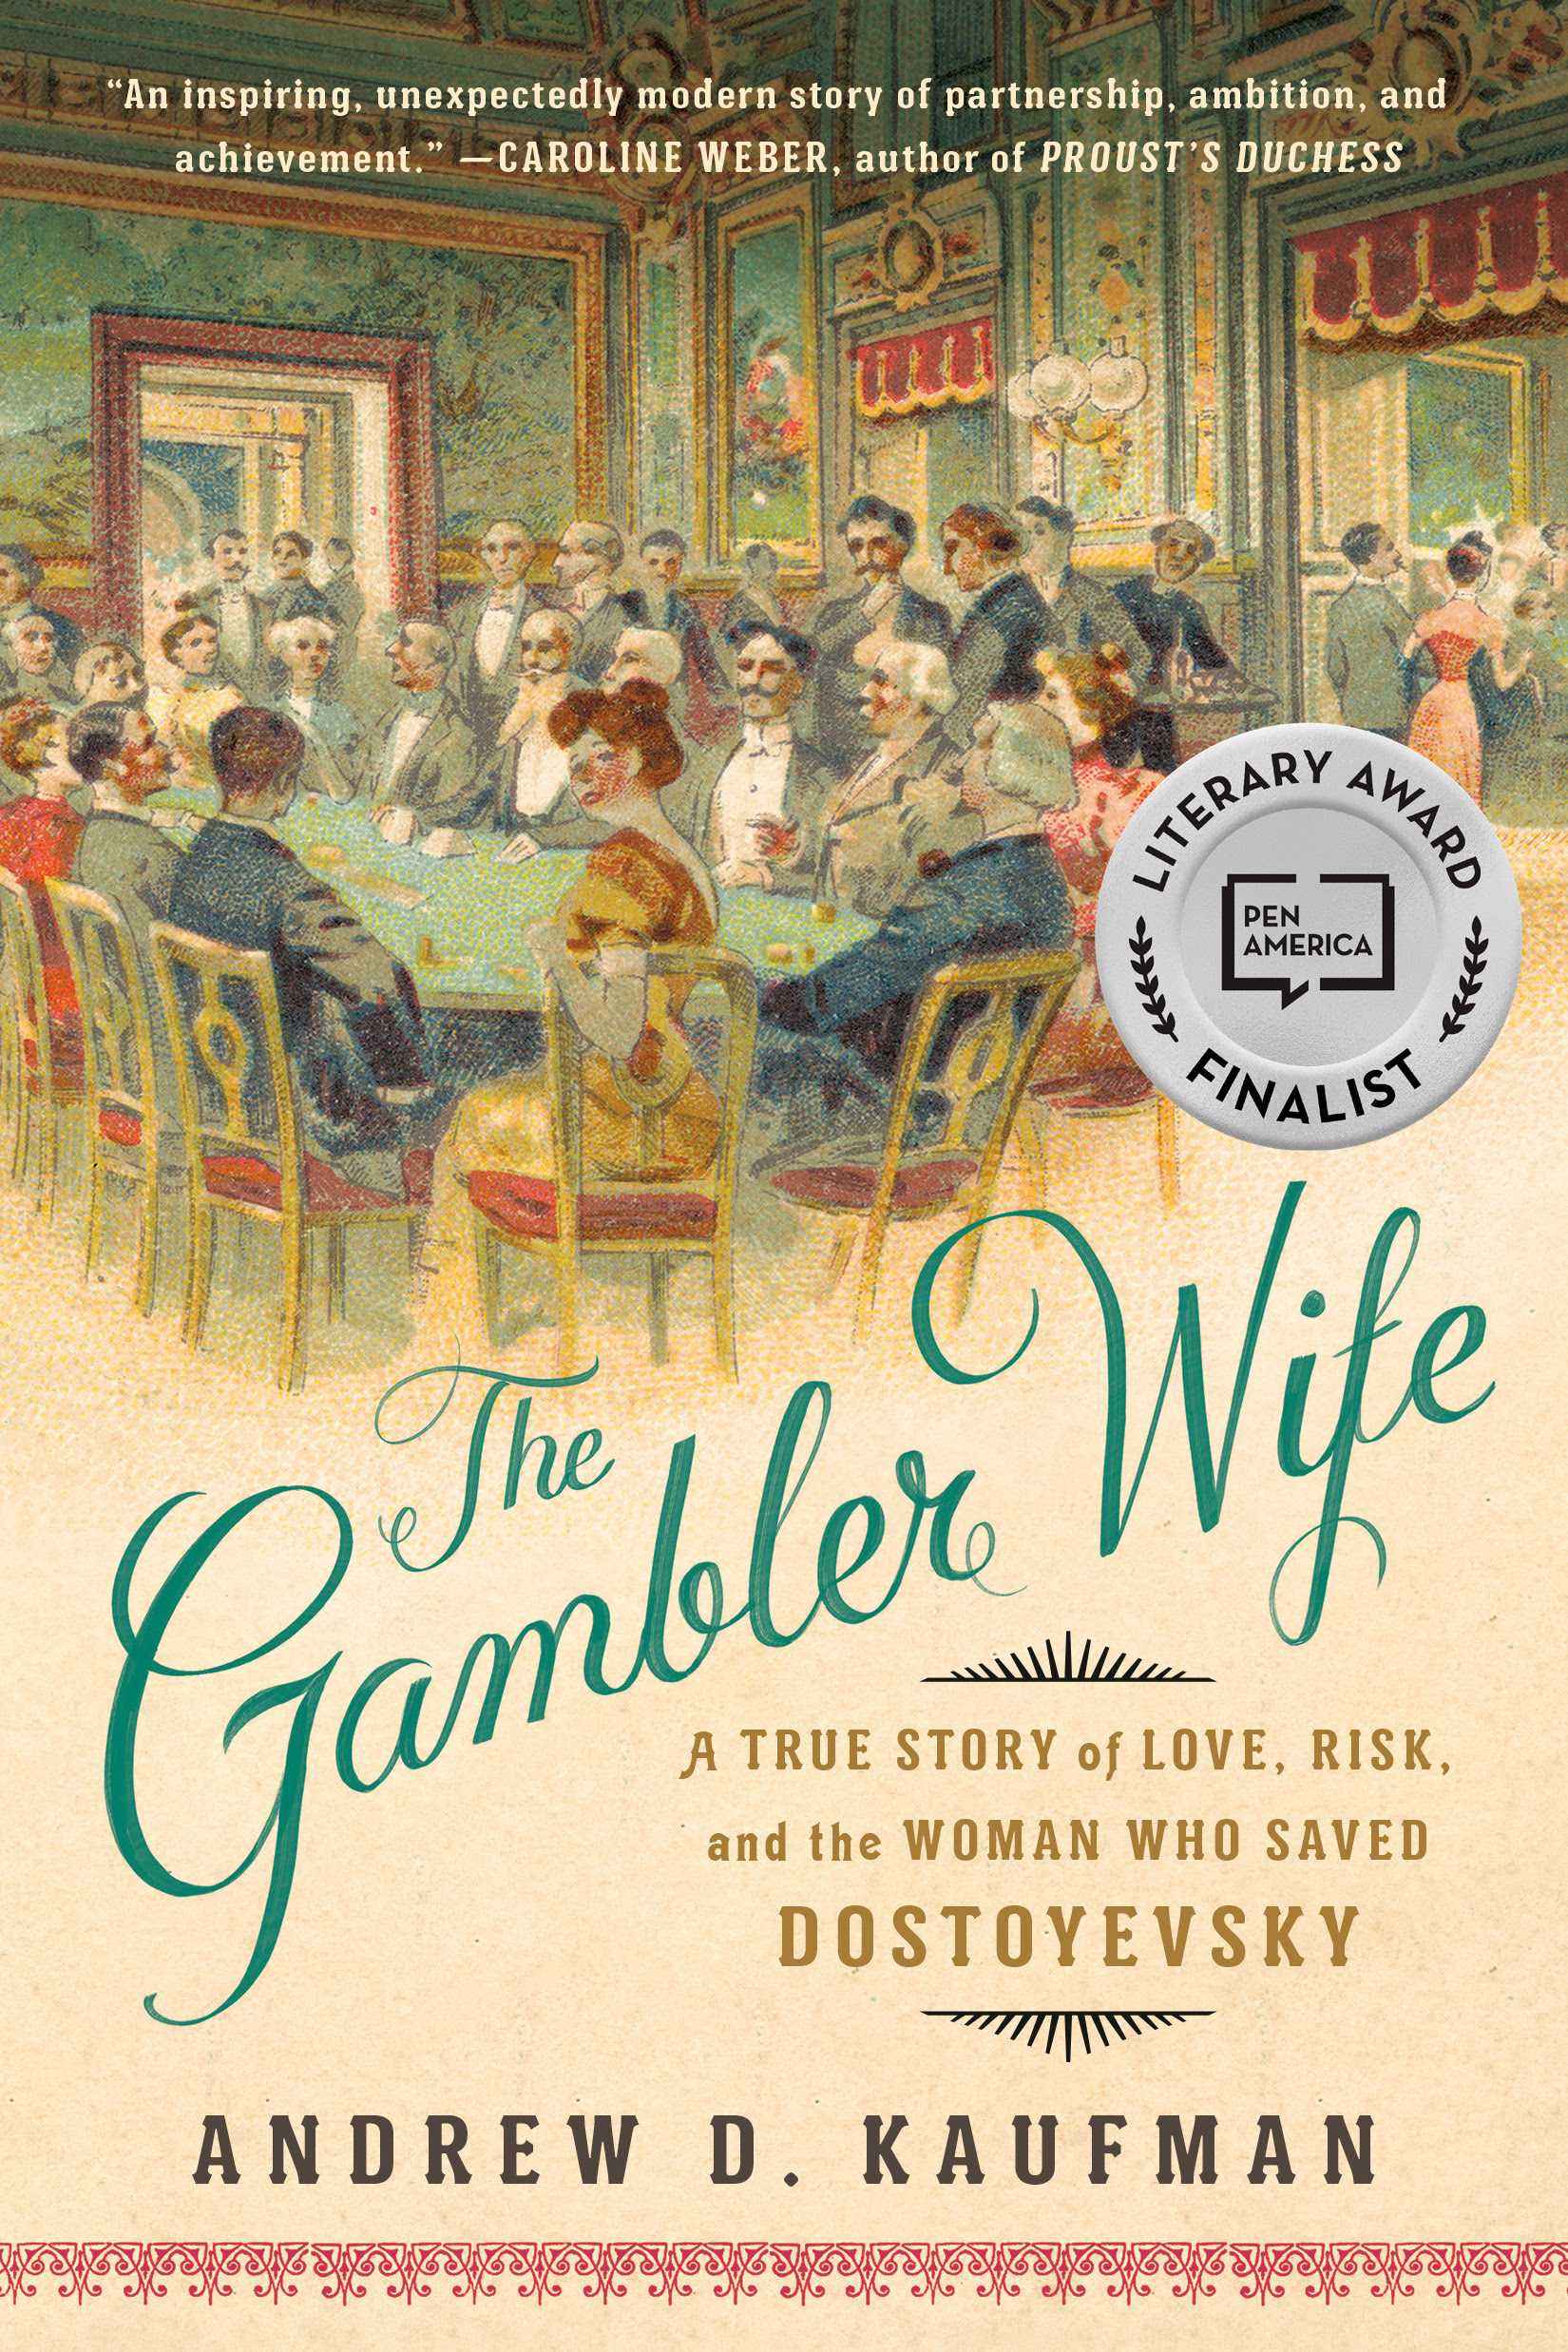 The Gambler Wife by @andrewdkaufman 